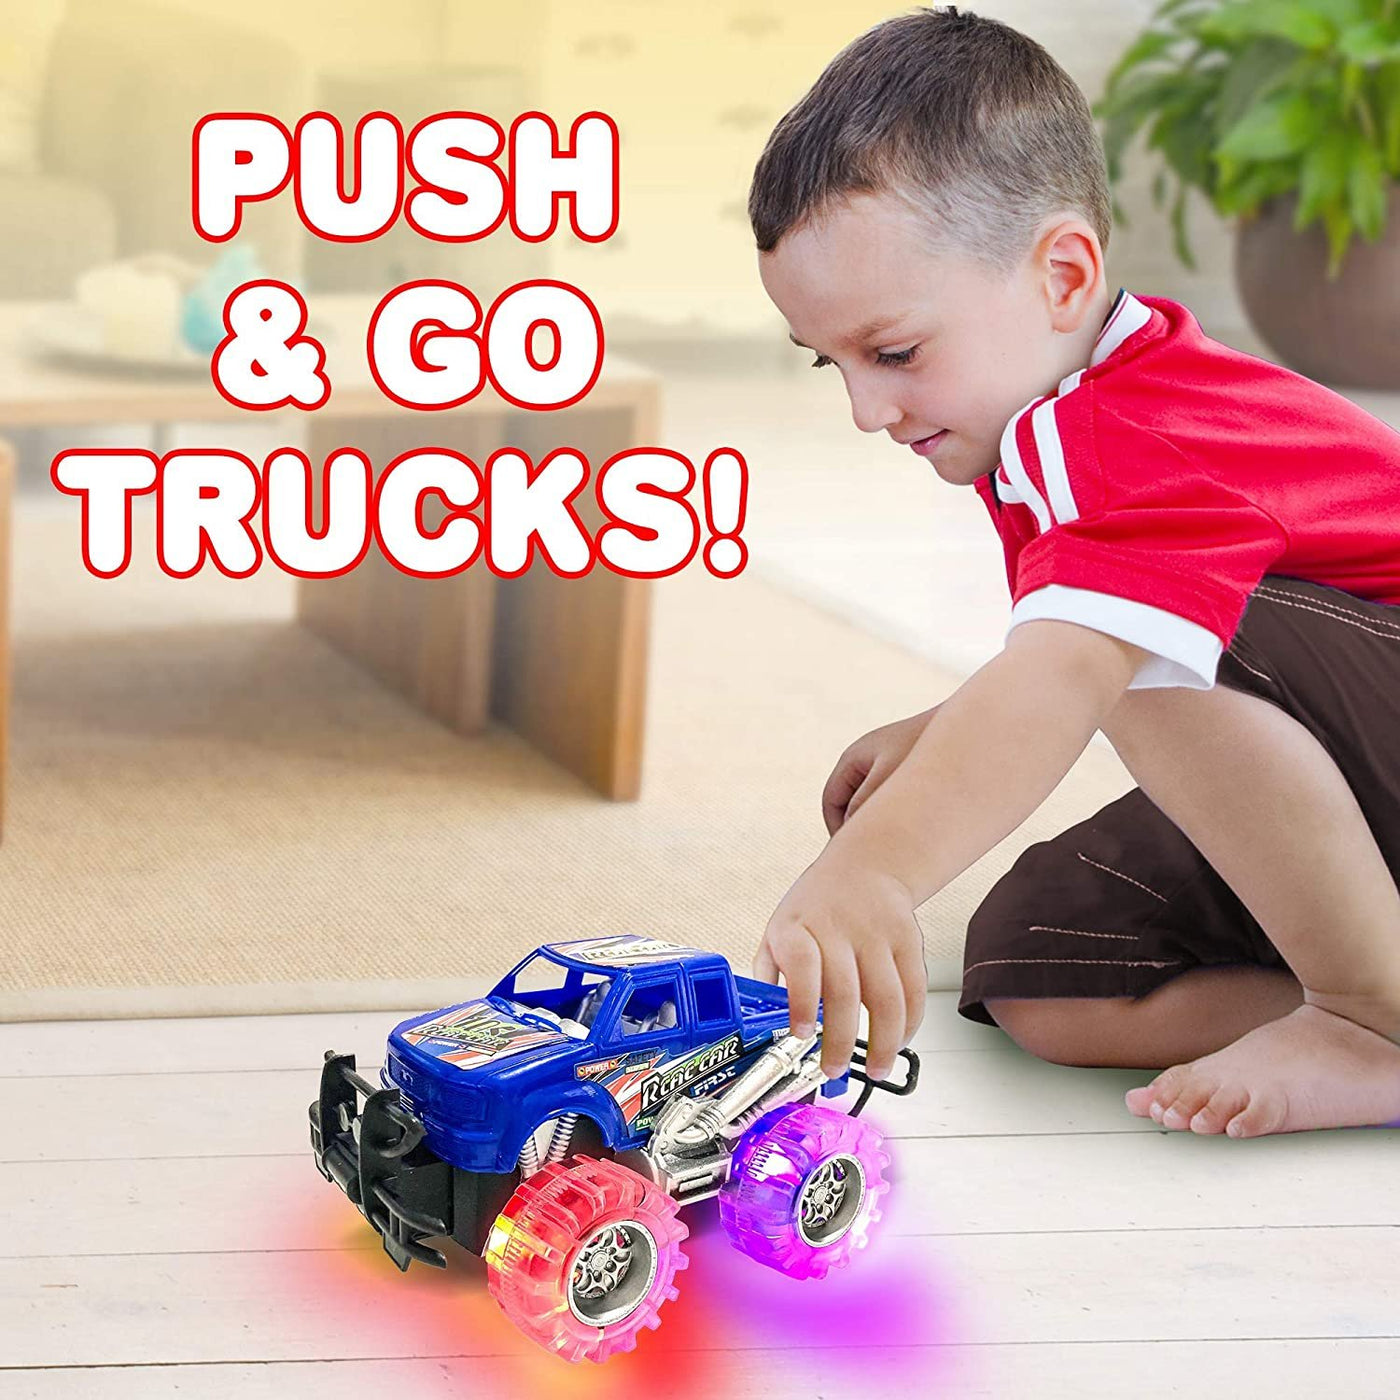 4 Light Up Monster Trucks - 6" Push-n-go Monster Trucks with Flashing LED Tires - Set of 4